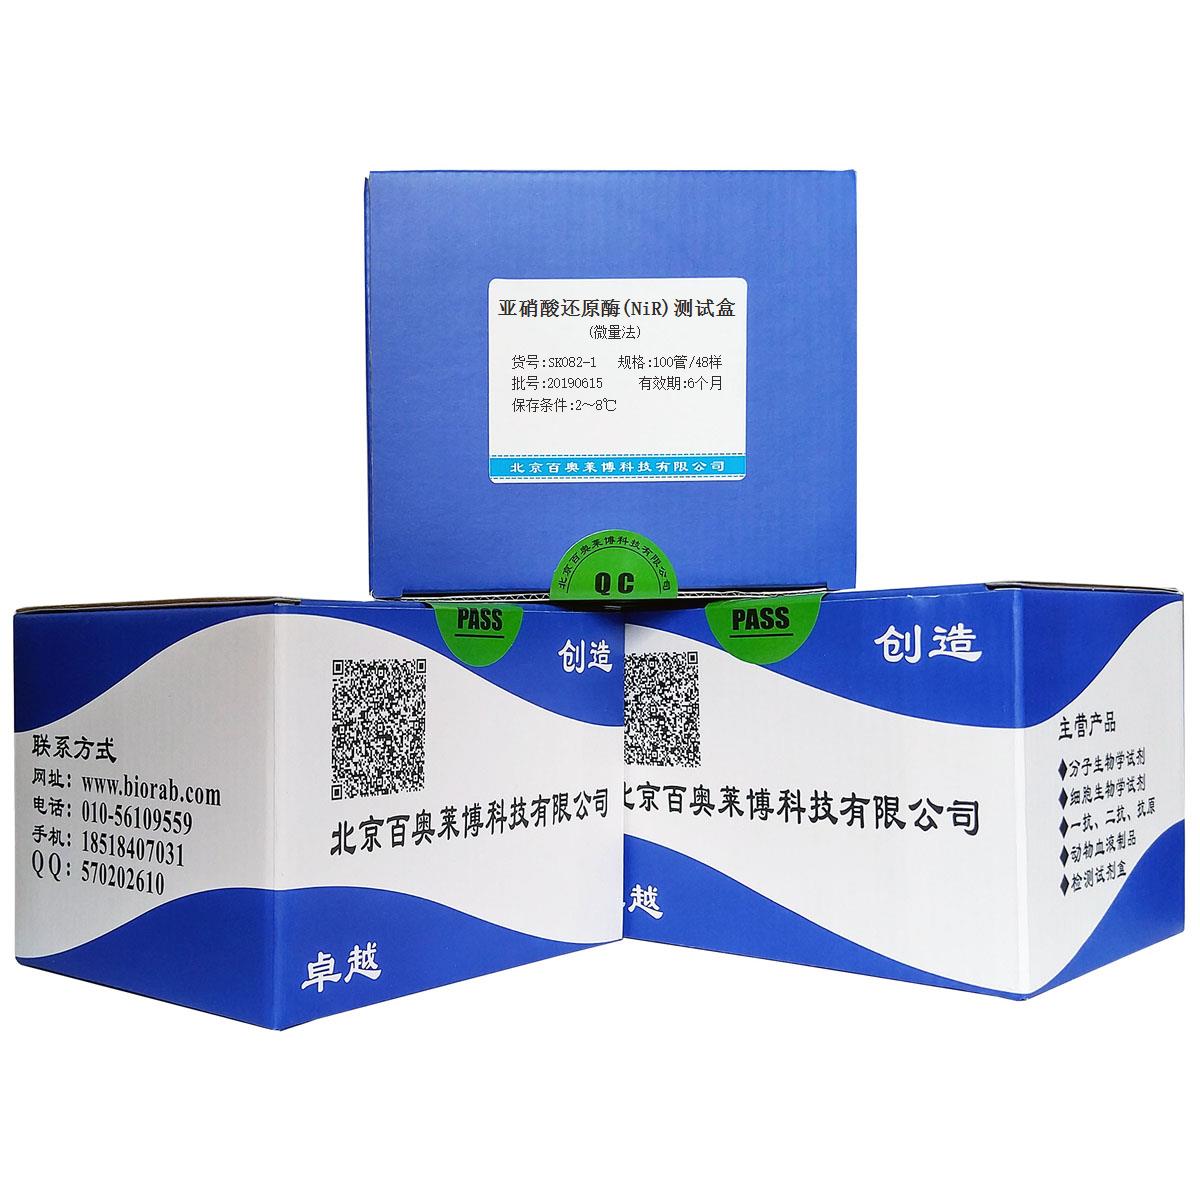 亚硝酸还原酶(NiR)测试盒(微量法)北京供应商